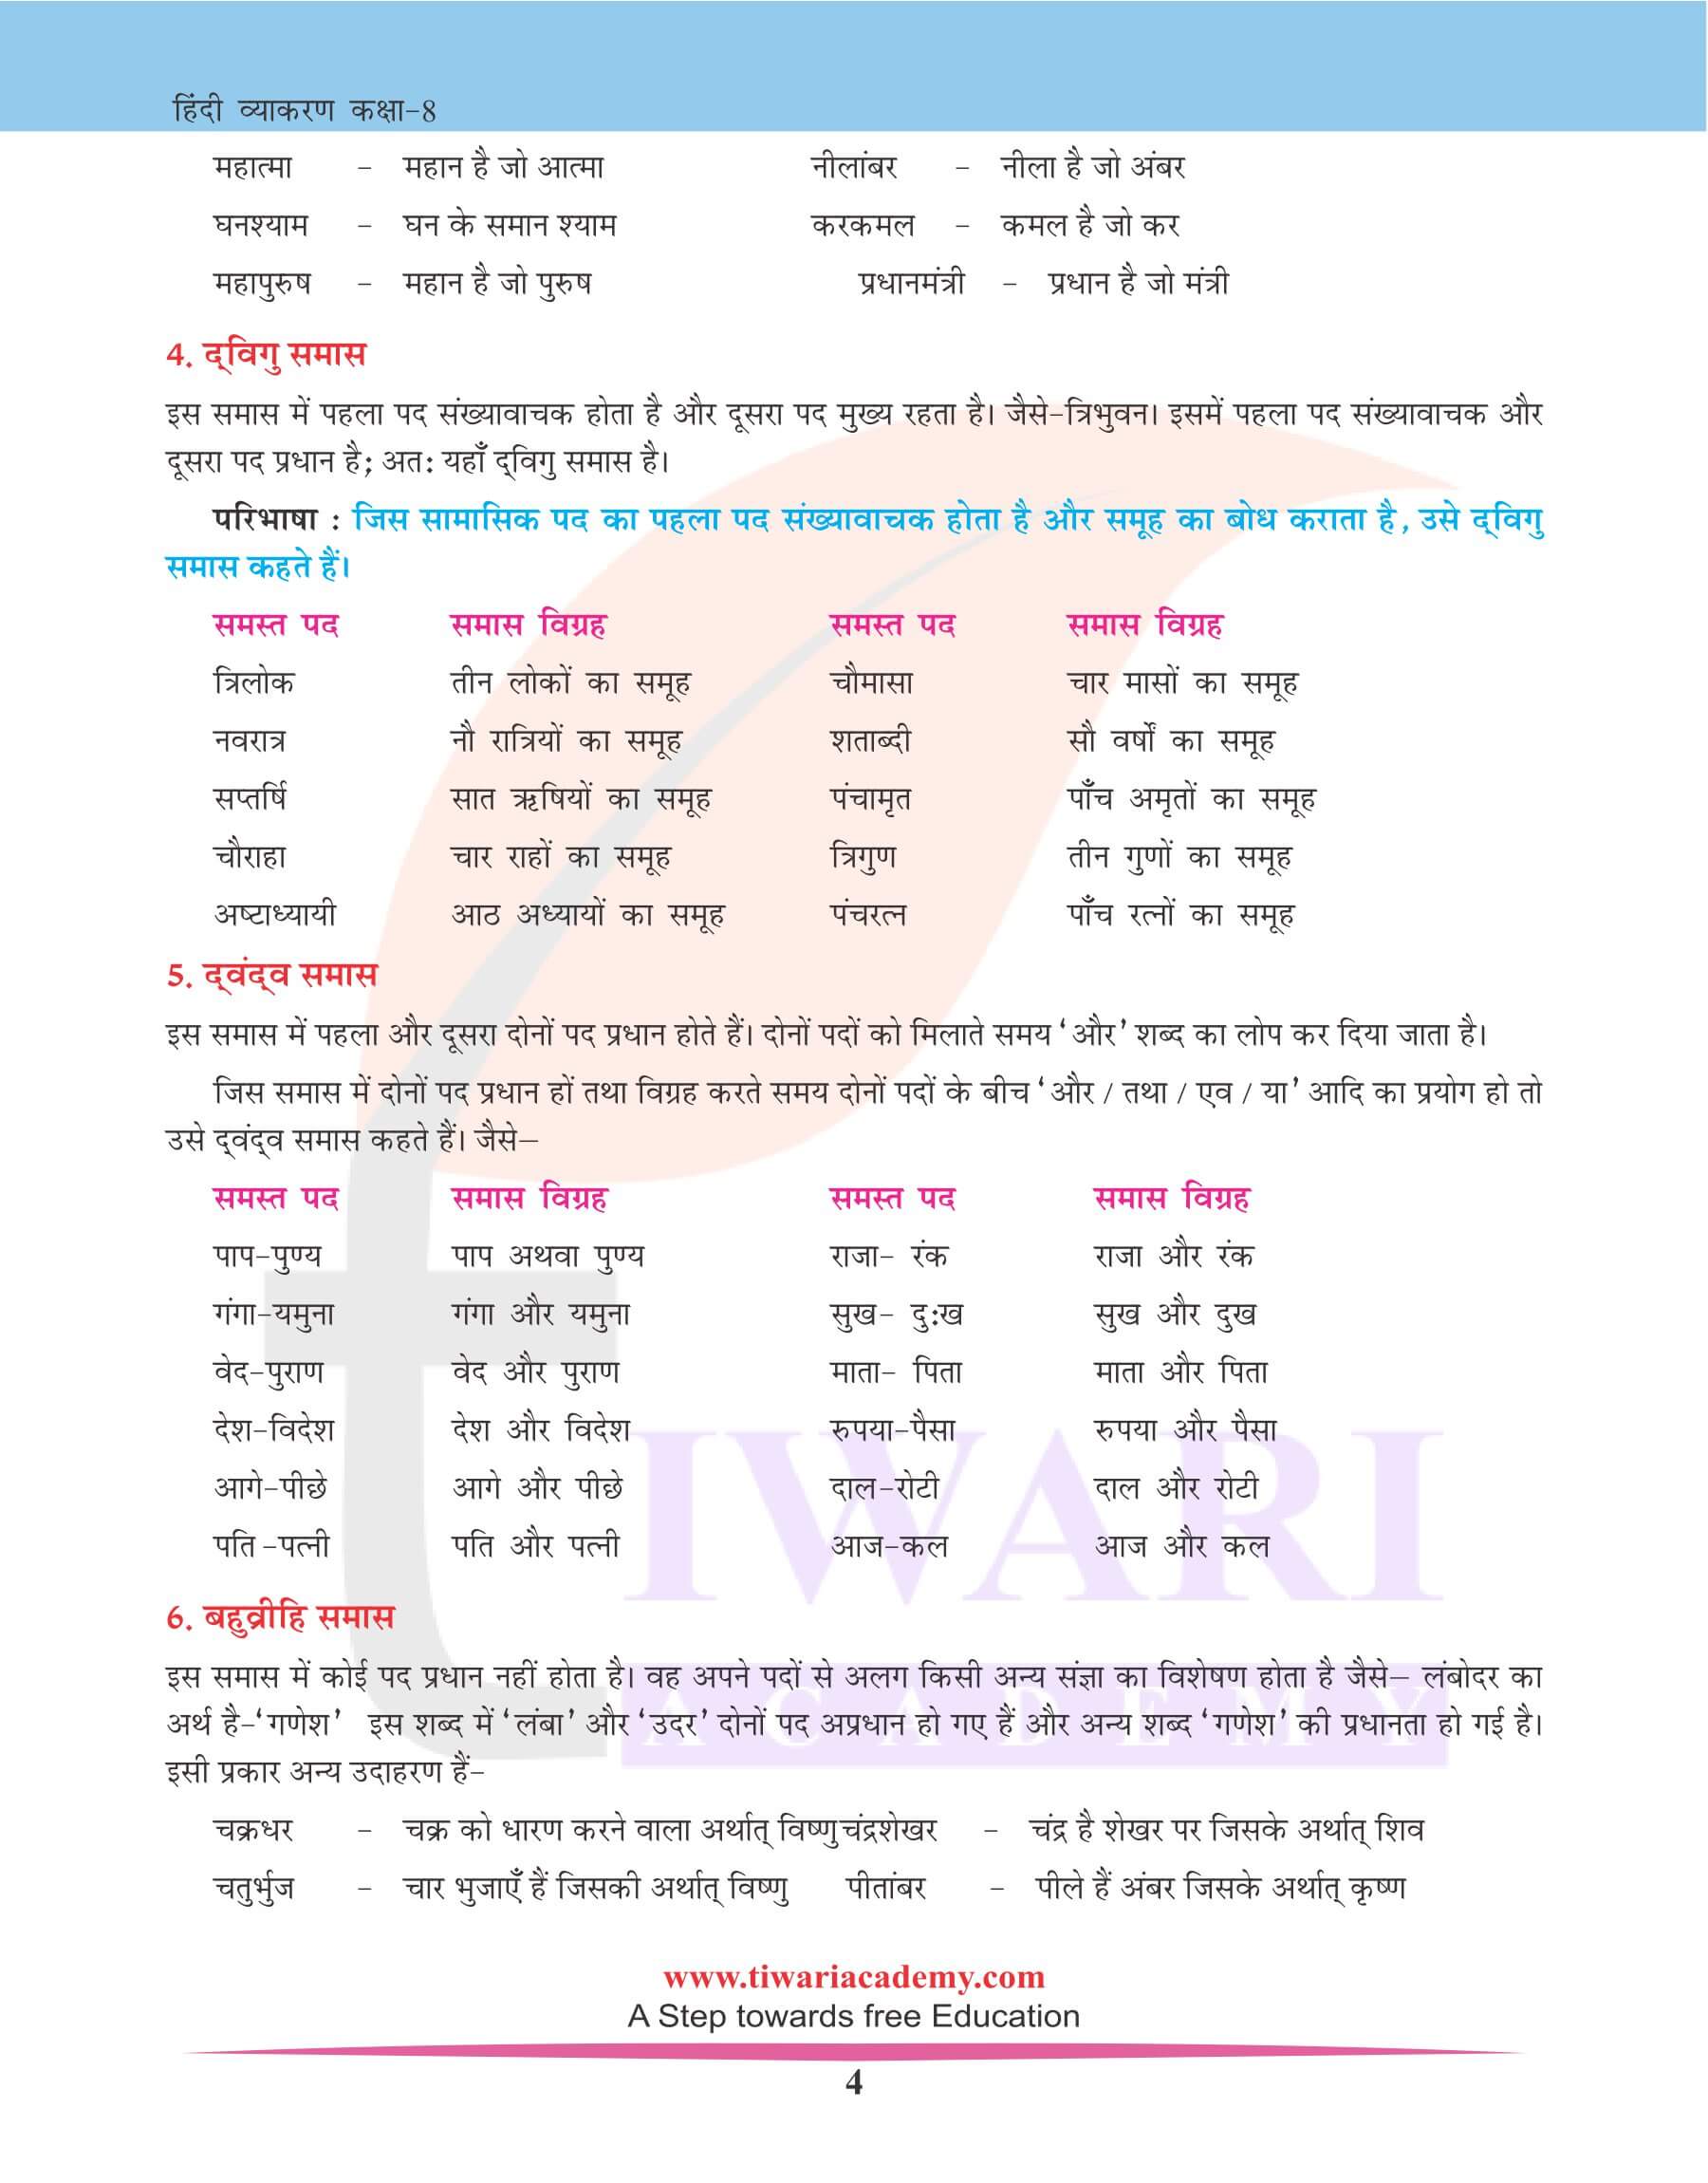 कक्षा 8 हिंदी व्याकरण में समास के भेद